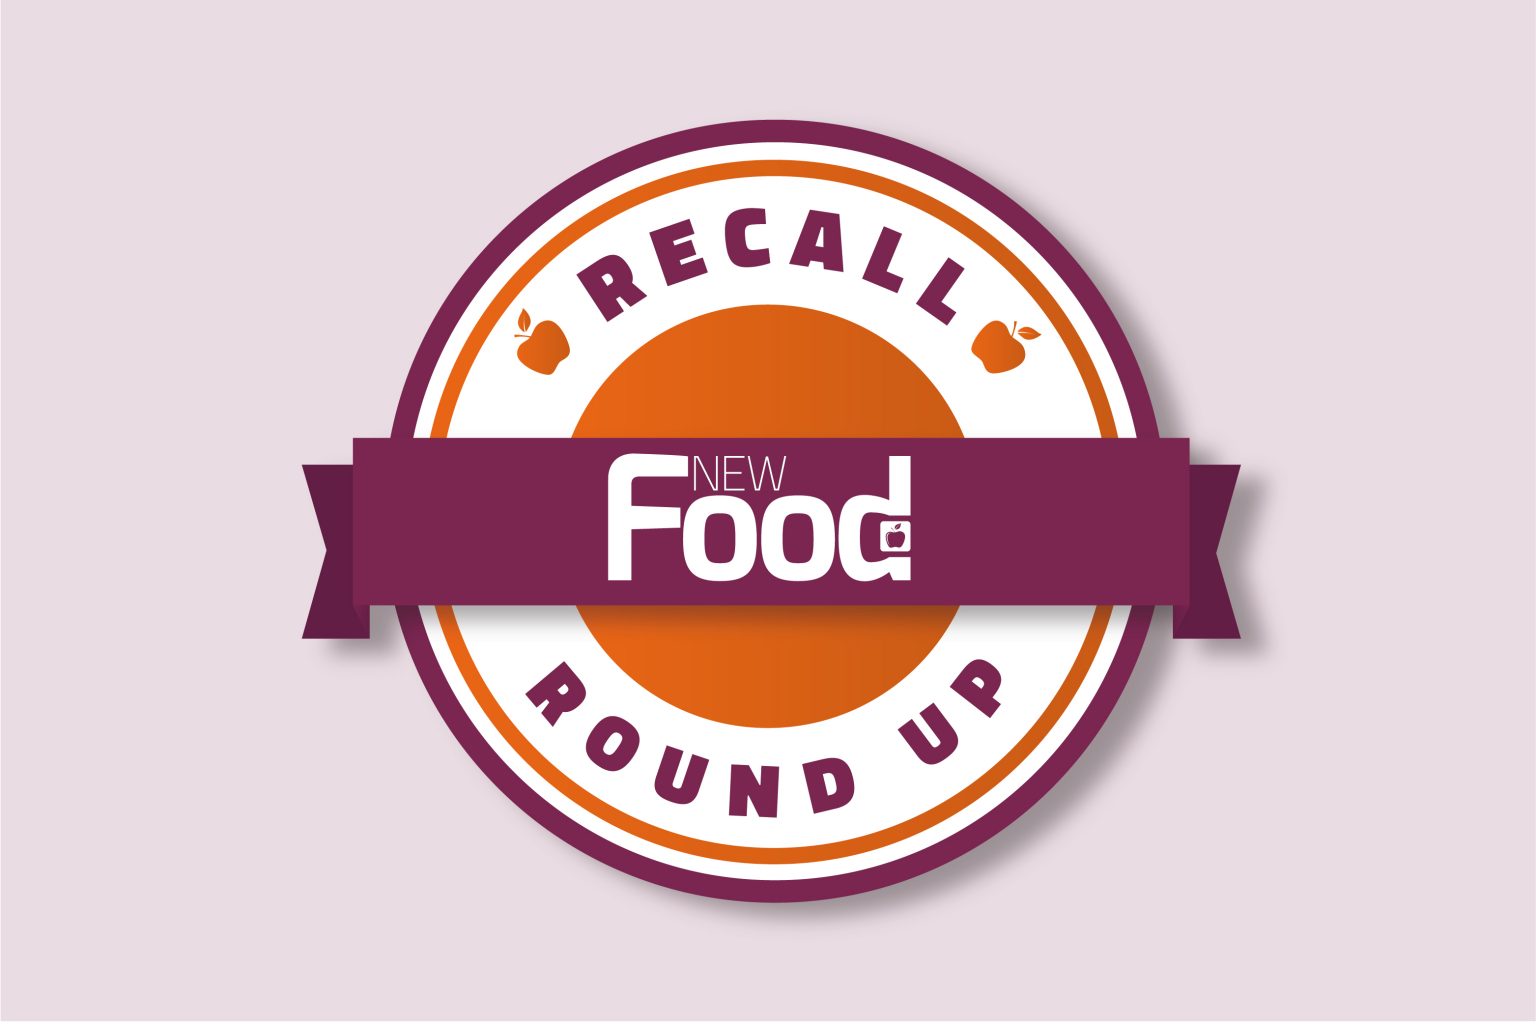 Recall Roundup: Salmonella and choking hazards